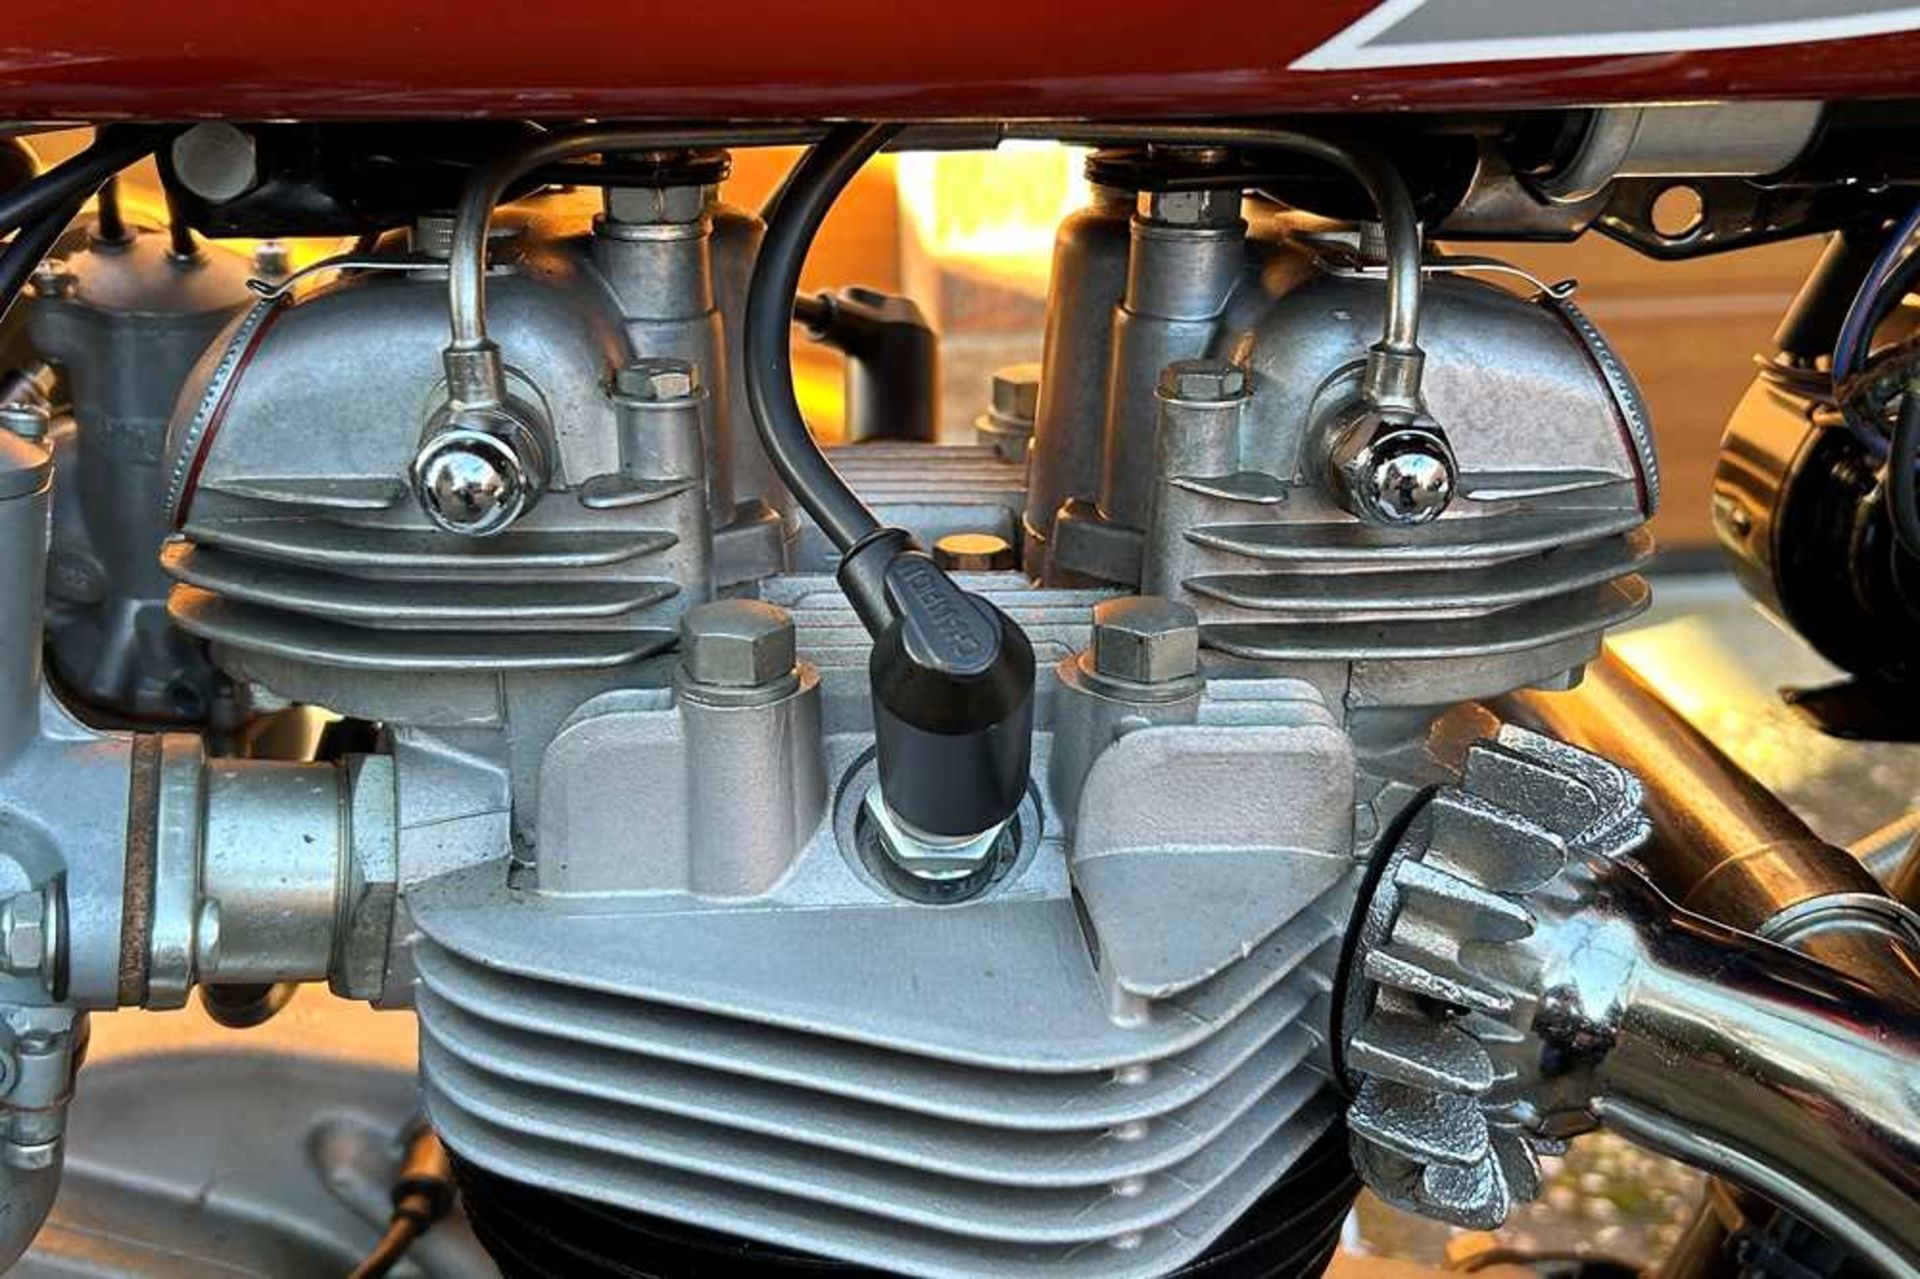 1969 Triumph T120R Concours restoration - Image 13 of 52